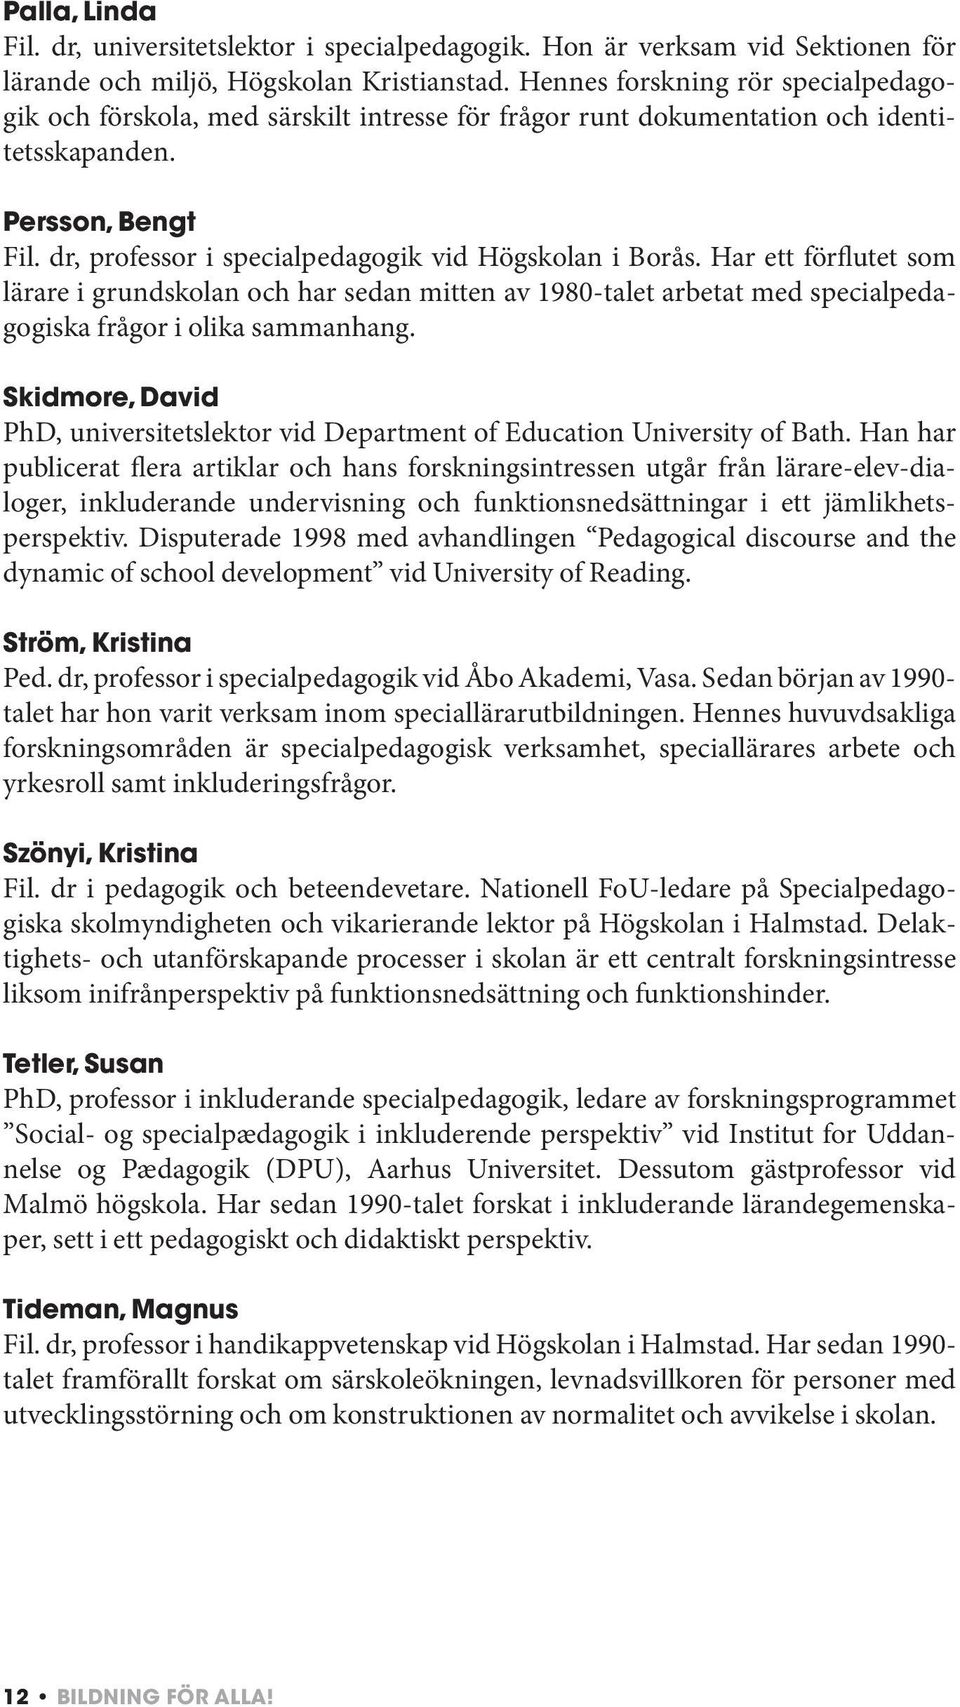 dr, professor i specialpedagogik vid Högskolan i Borås. Har ett förflutet som lärare i grundskolan och har sedan mitten av 1980-talet arbetat med specialpedagogiska frågor i olika sammanhang.